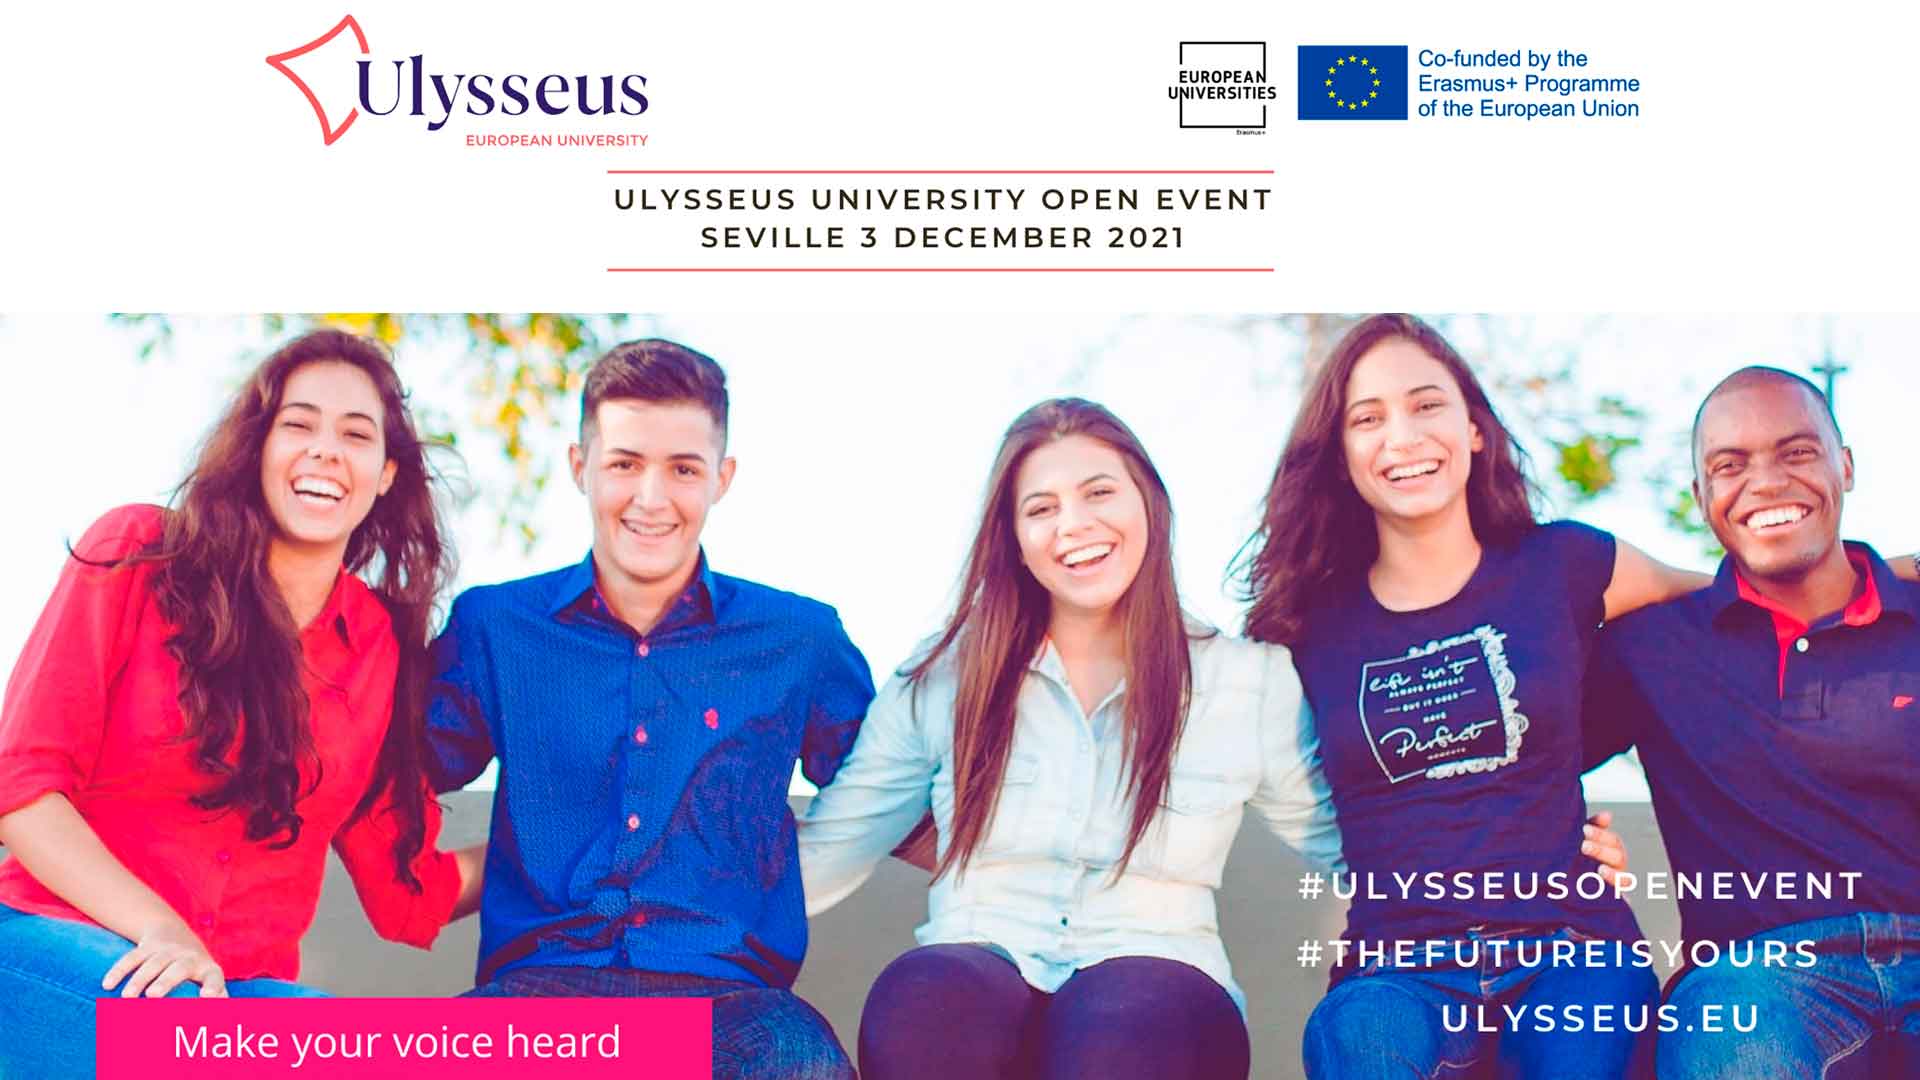 Ulysseus European University veranstaltet erstes face-to-face Open Event für Studierende, um ihre Meinung zu wichtigen Themen im Vorfeld der Konferenz über die Zukunft Europas im nächsten Frühjahr zu äußern